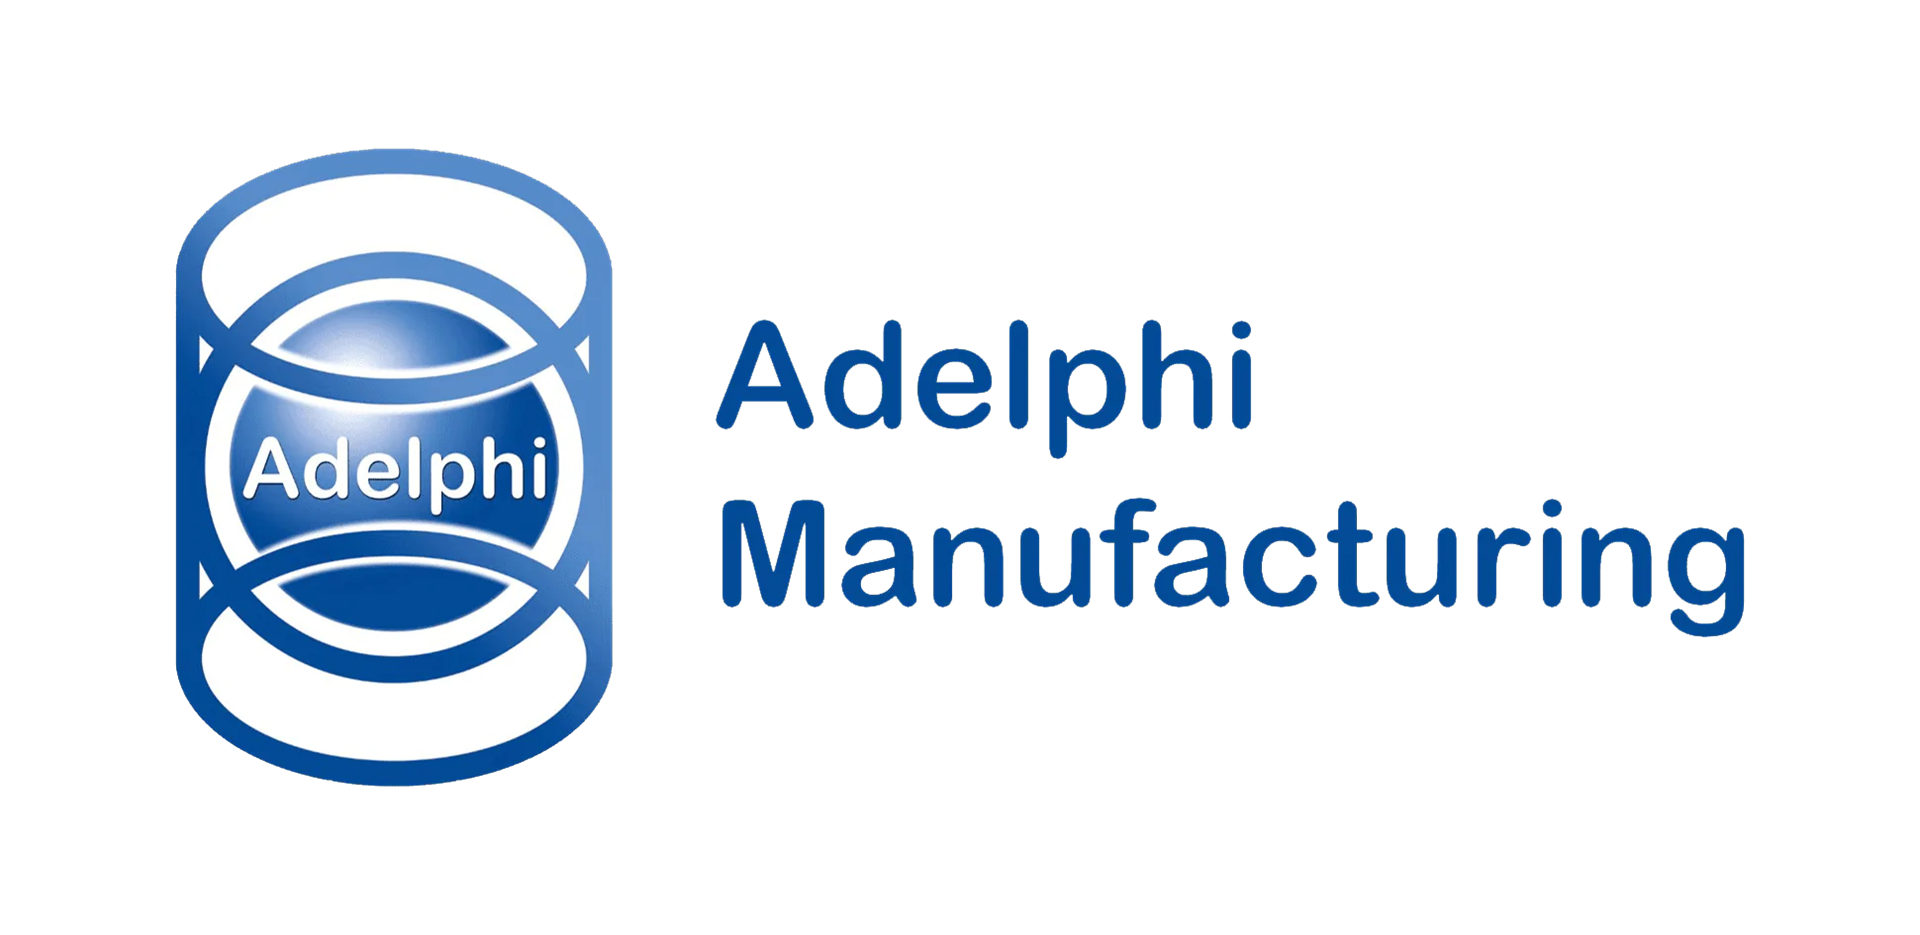 adelphi manufacturing logo